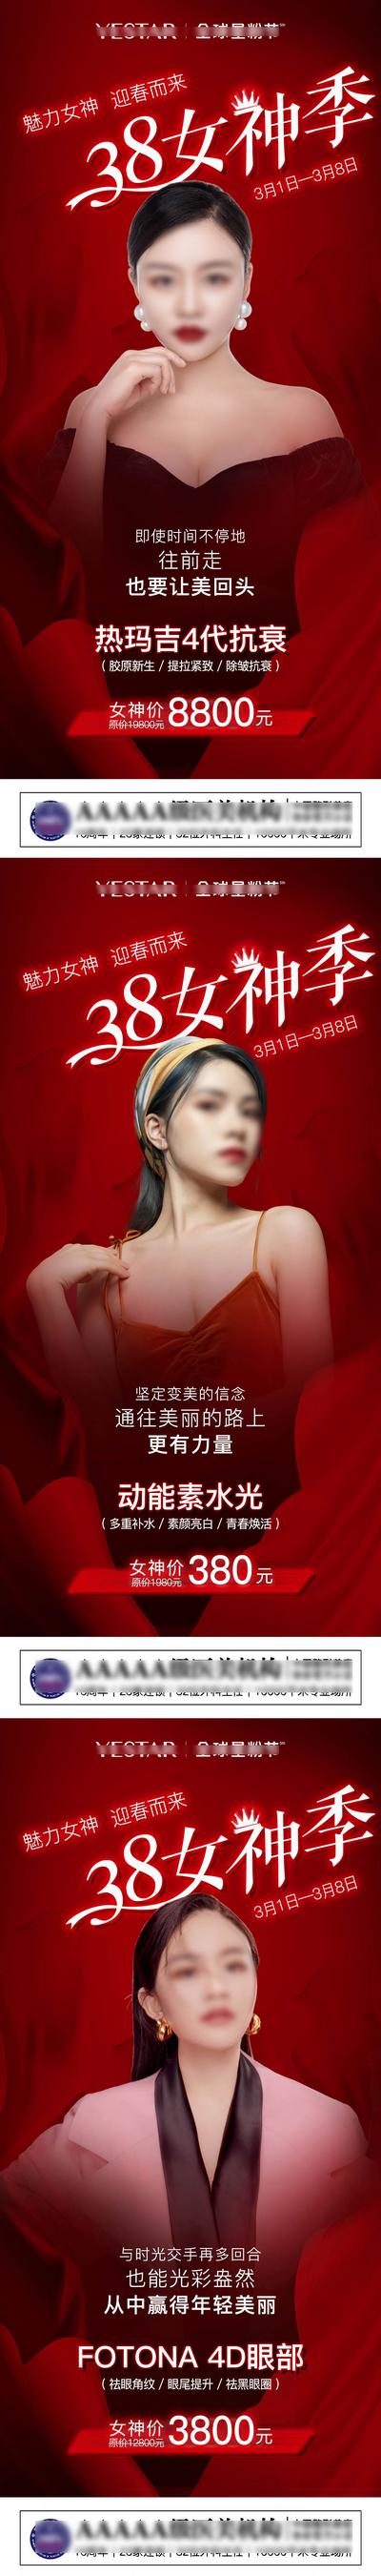 【南门网】海报 医美 公历节日 38 女神节 妇女节 活动 红金 系列